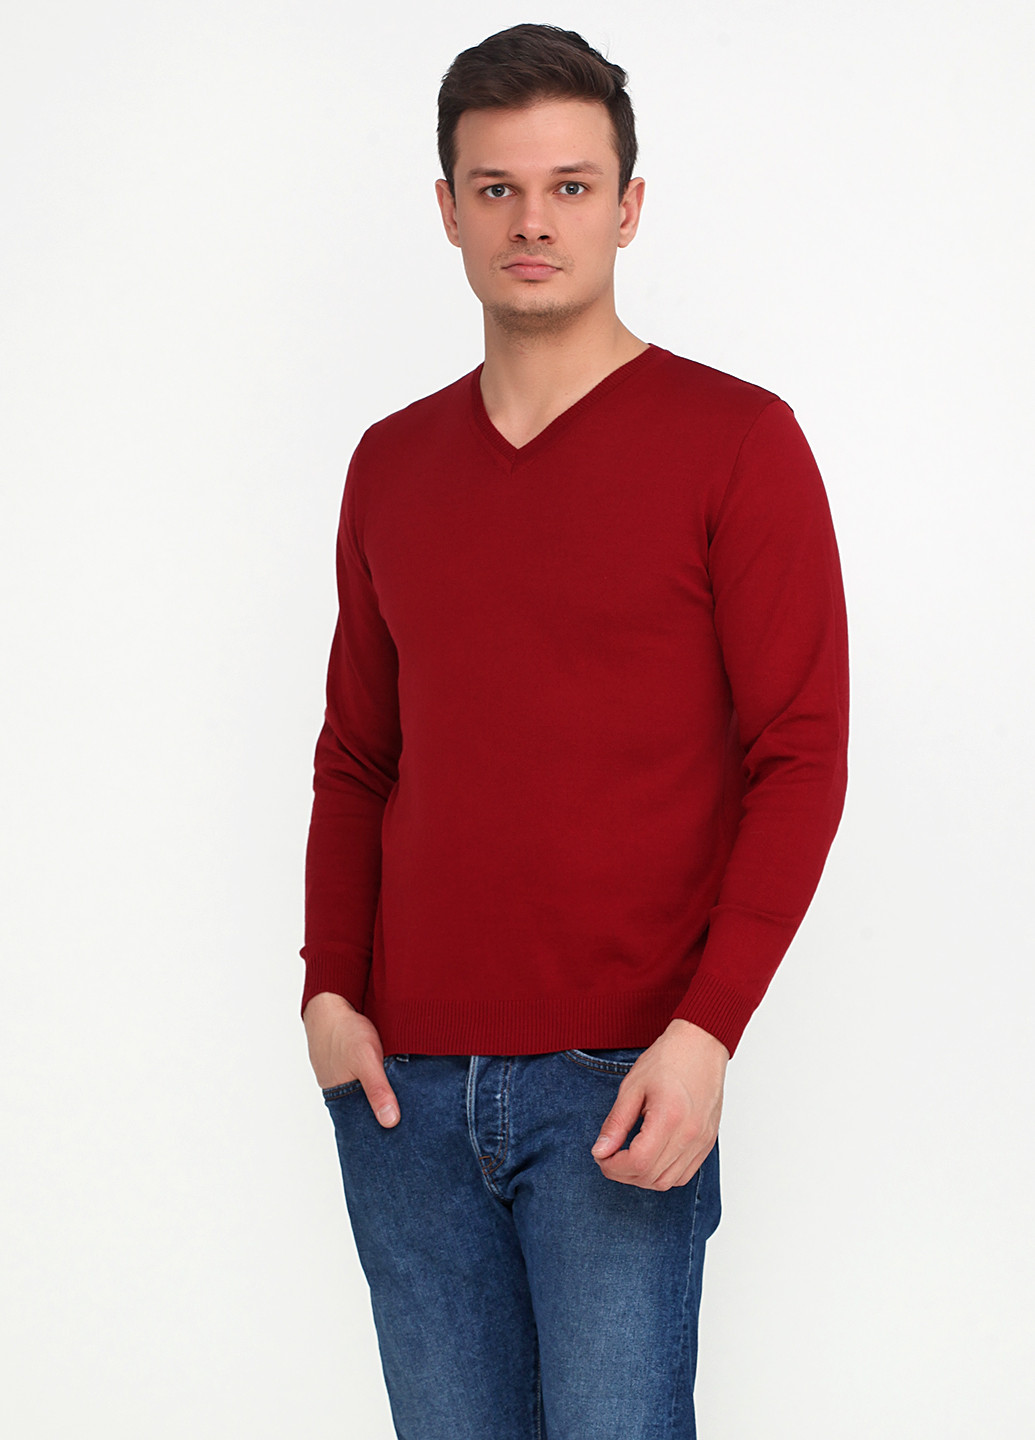 Бордовый демисезонный пуловер пуловер Zaldiz